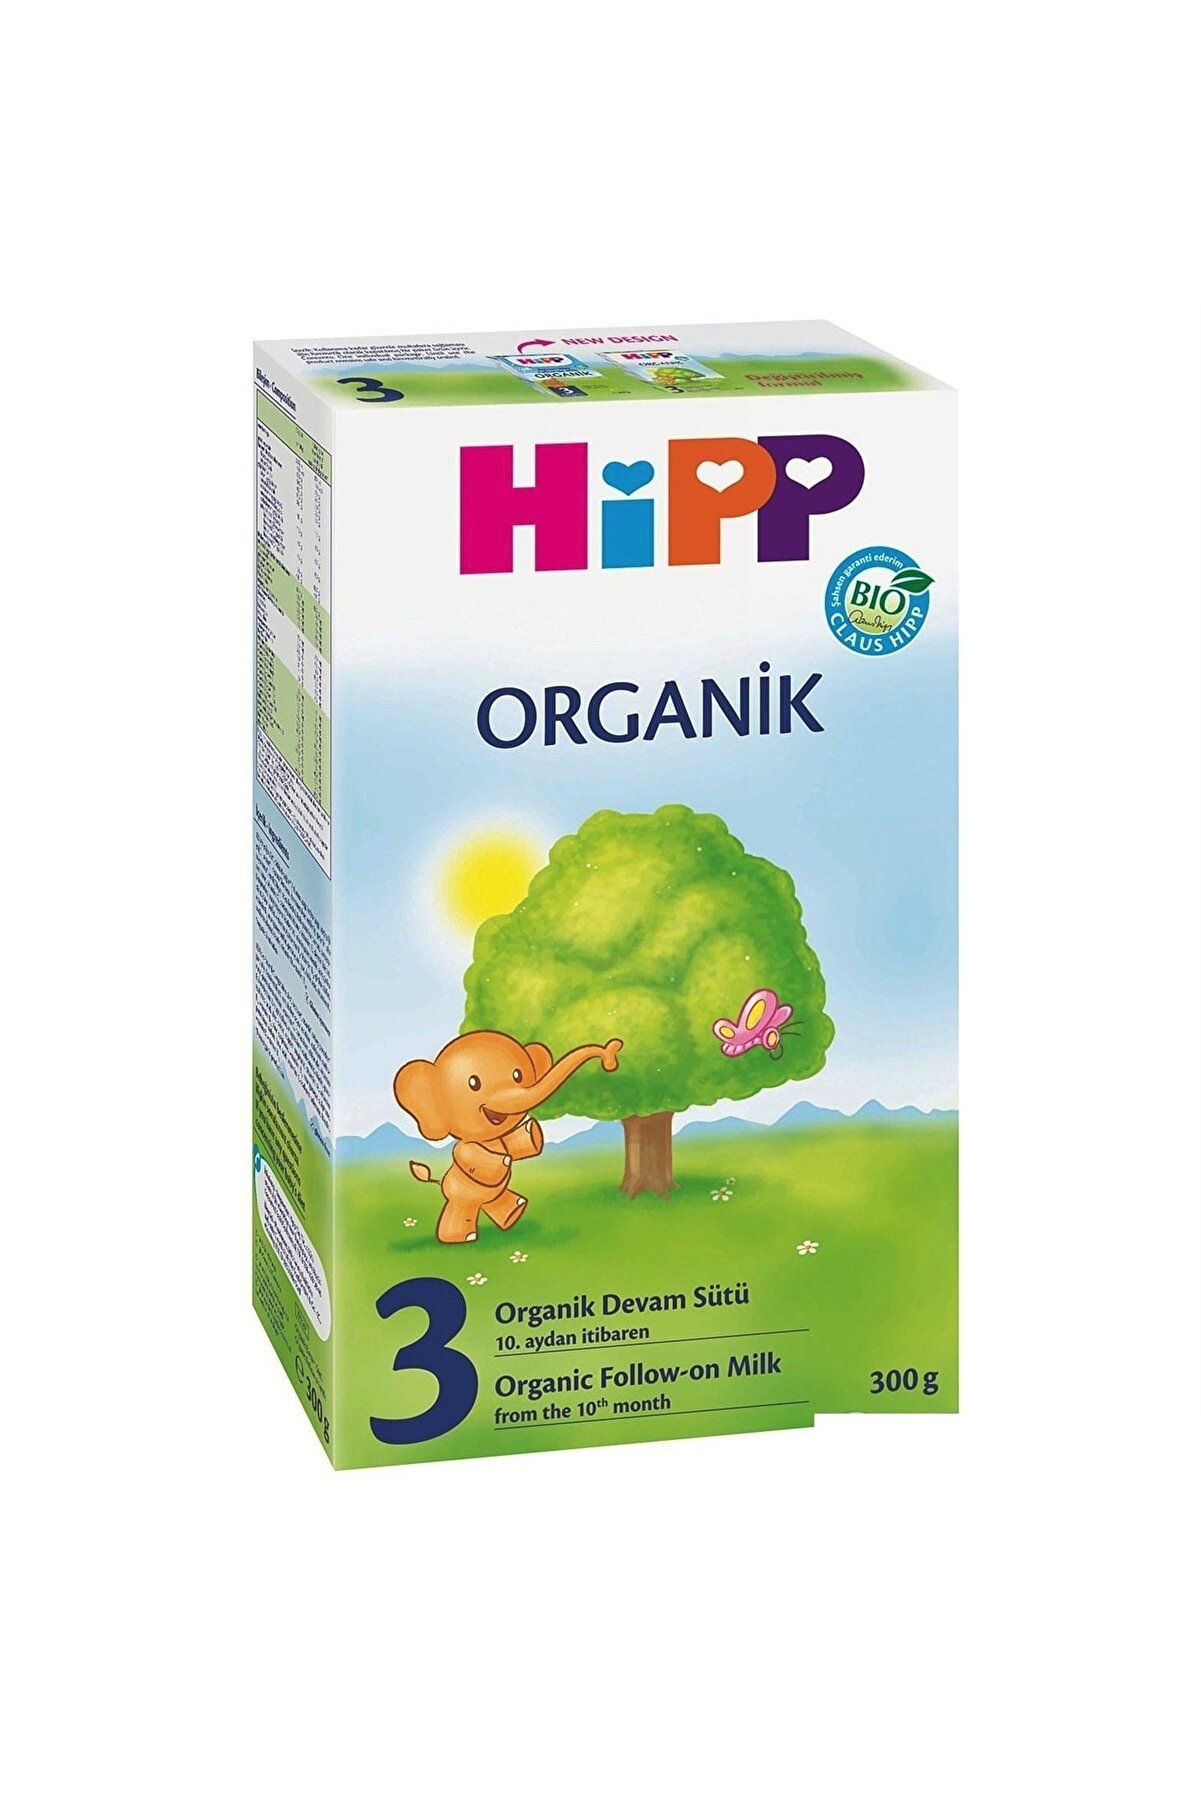 Hipp Boze 3 Organik Devam Sütü 300 Gr